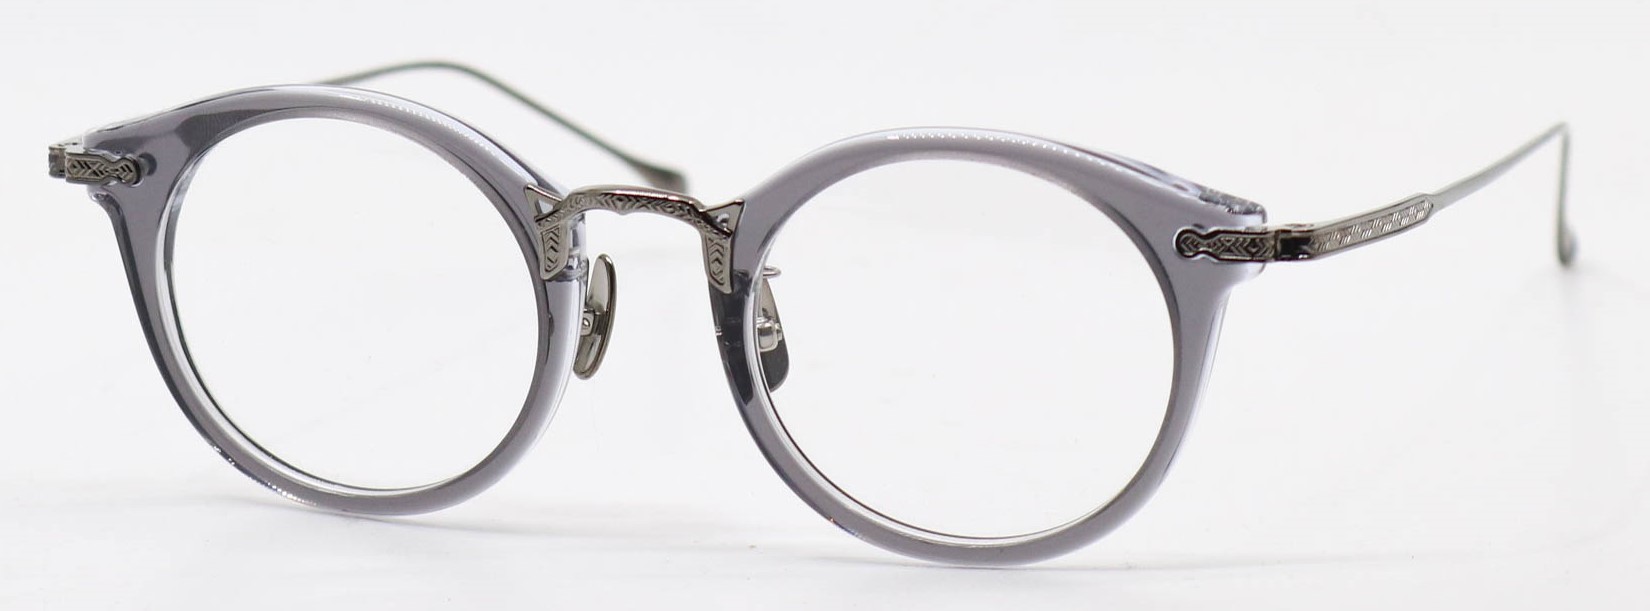 眼鏡のカラータイプC-4 Gray/Gray